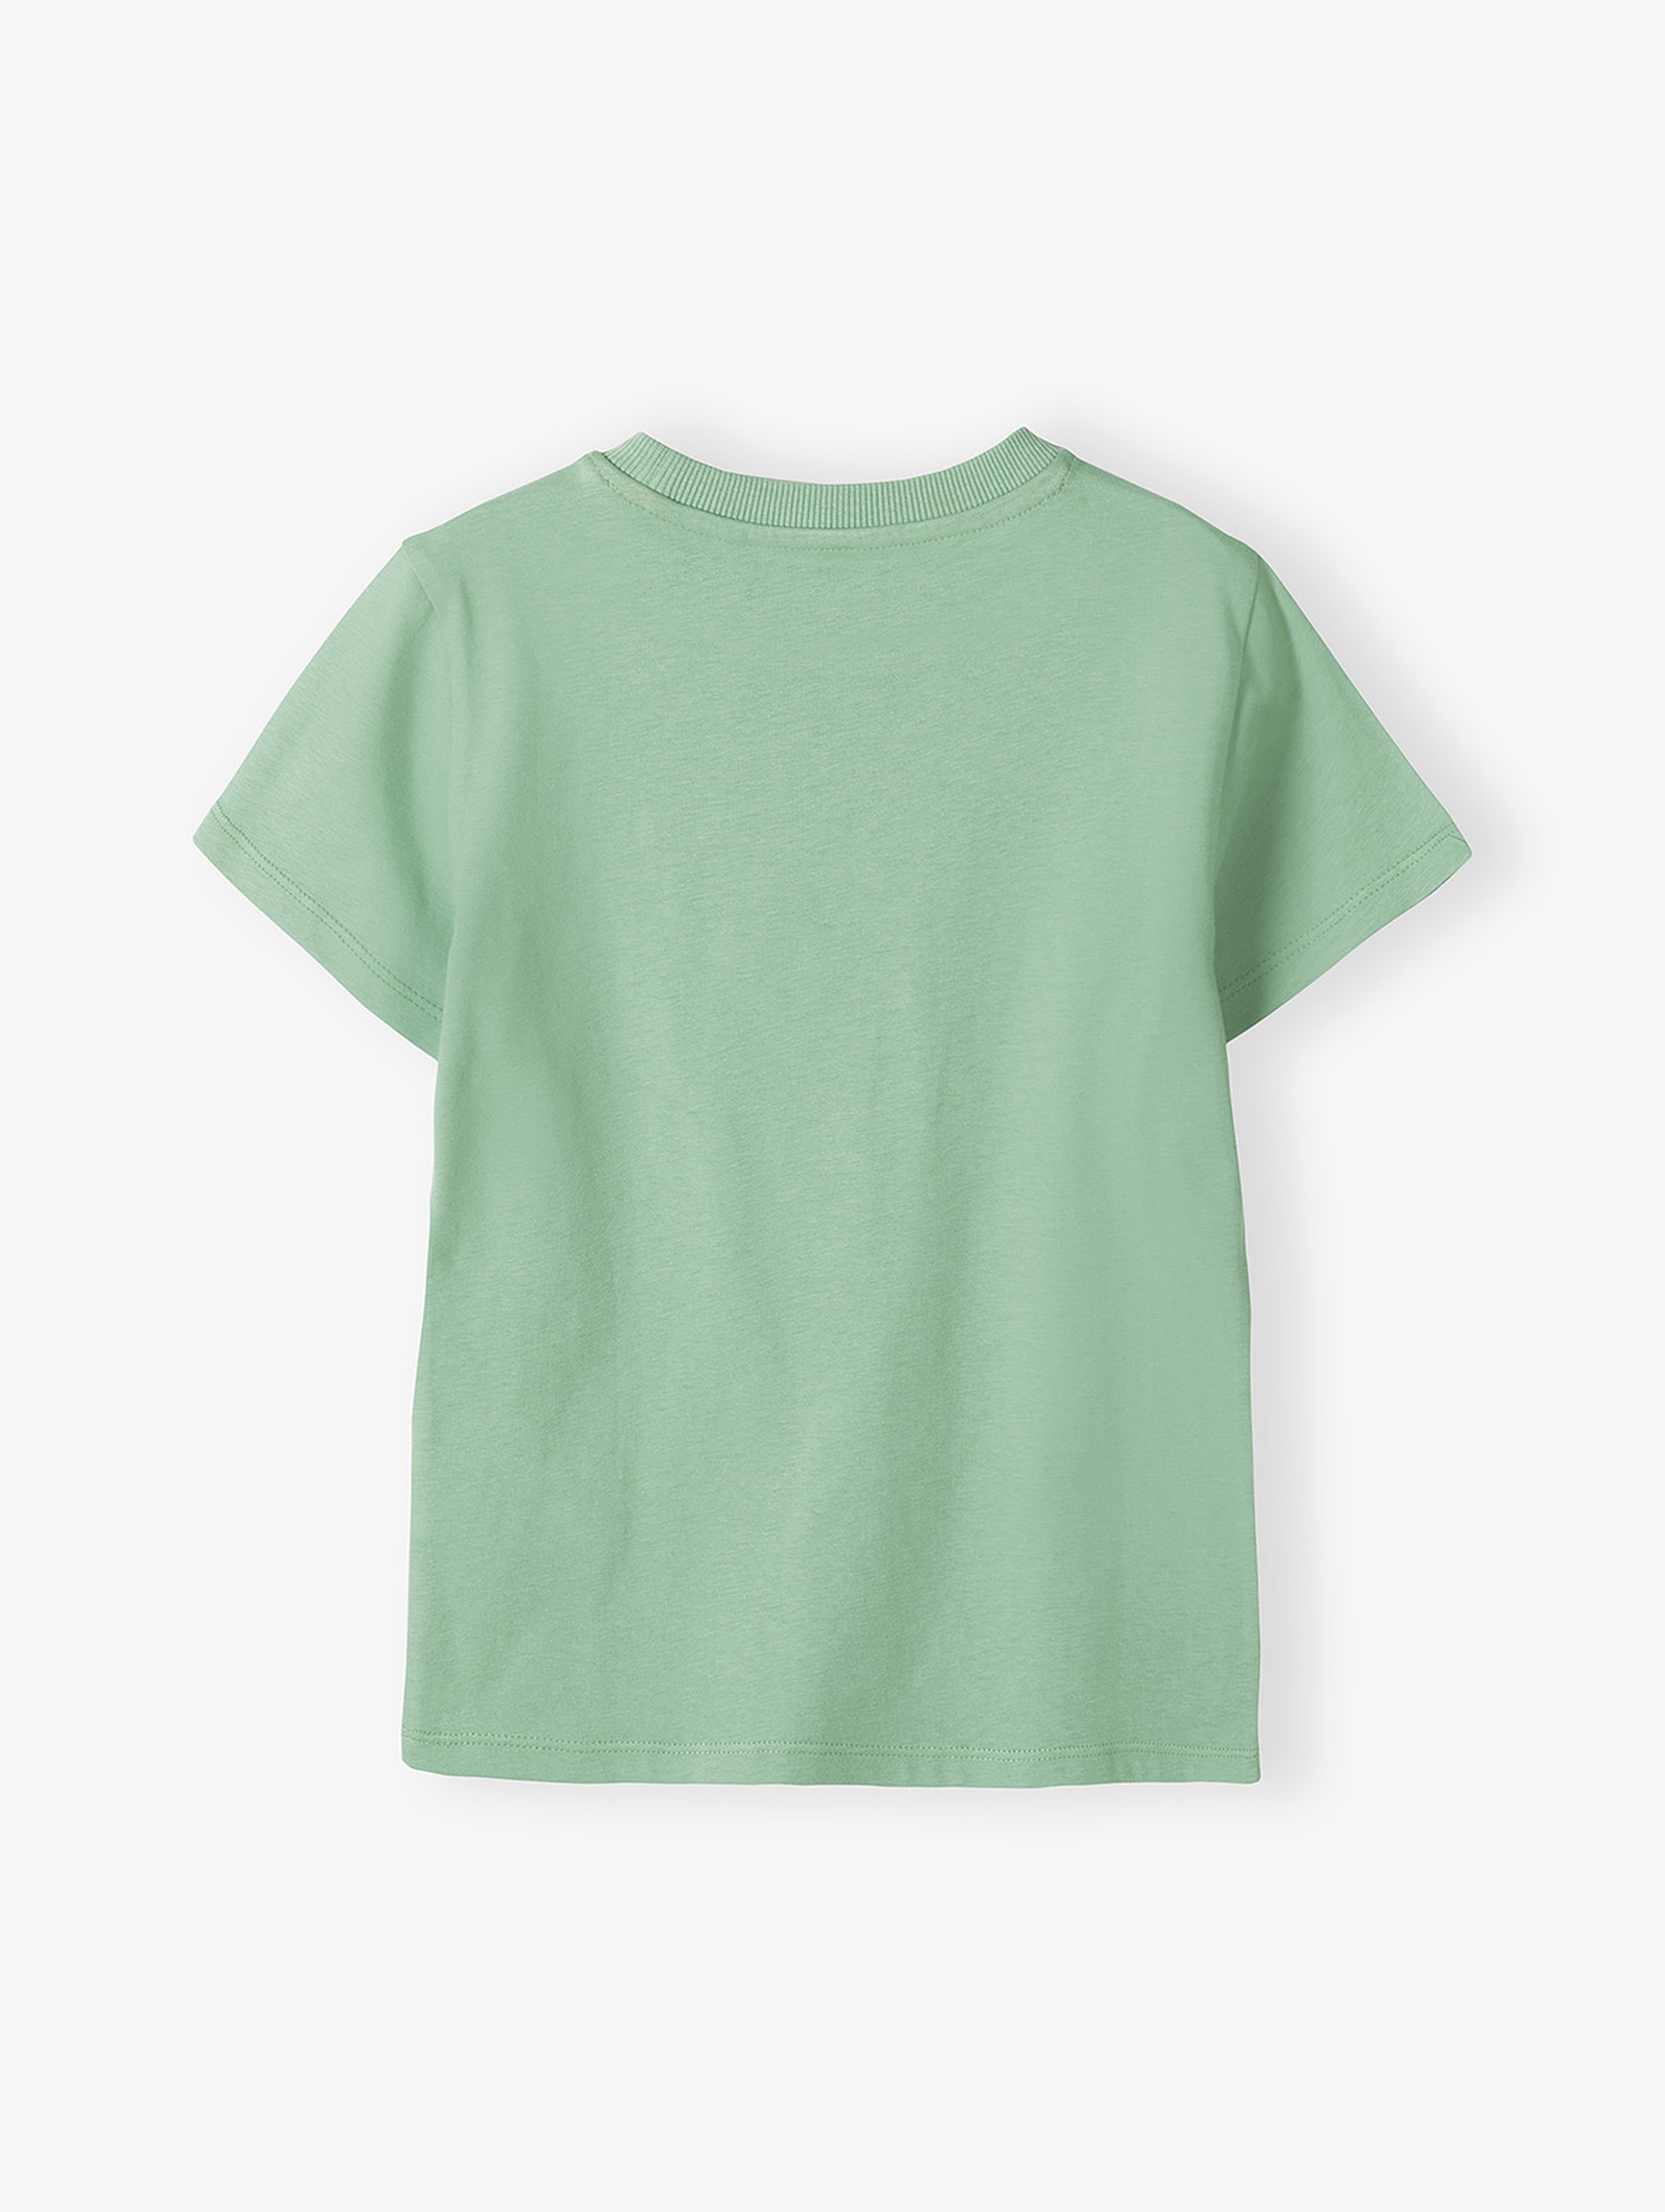 Zielony t-shirt dla chłopca bawełniany z nadrukiem betoniarki